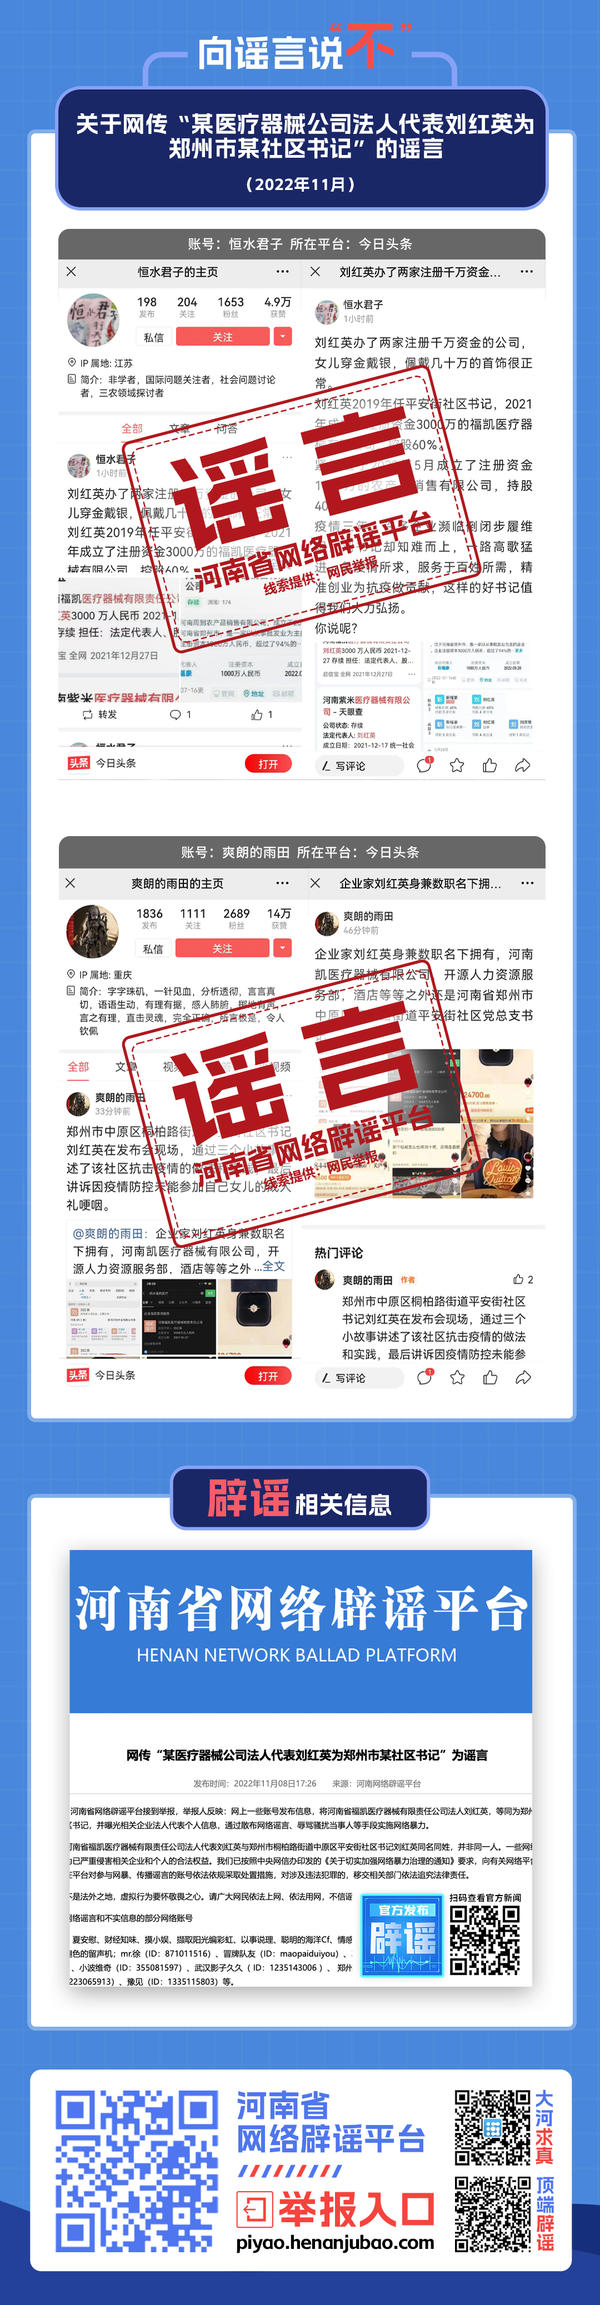 关于网传“某医疗器械公司法人代表刘红英为郑州市某社区书记”的谣言